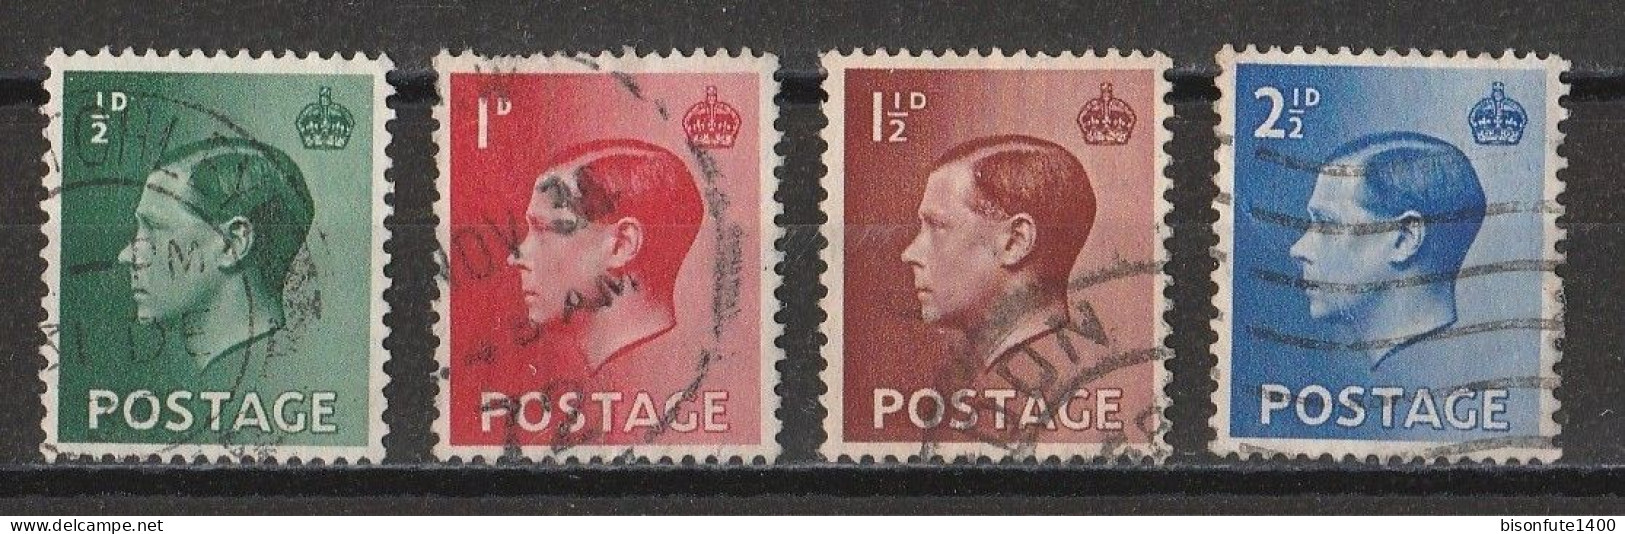 Grande-Bretagne 1936 : Timbres Yvert & Tellier N° 205 - 206 - 207 Et 208 Oblitérés. - Gebruikt